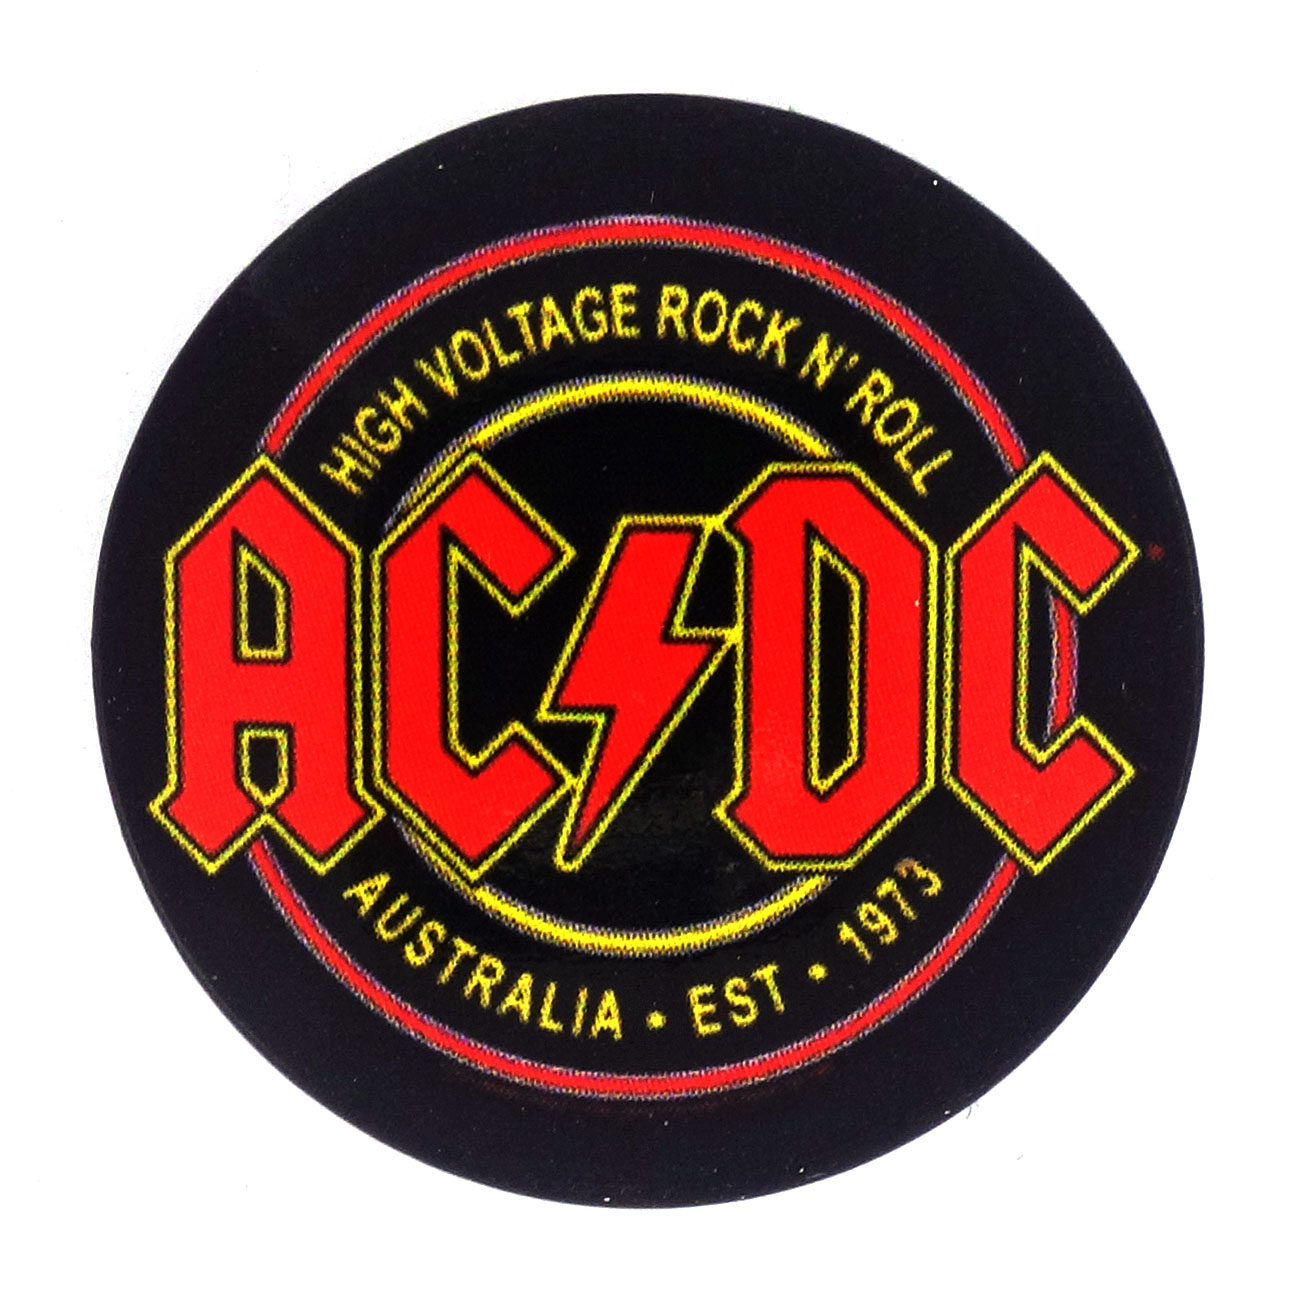 AC/DC Button High Voltage Australia Est. 1973